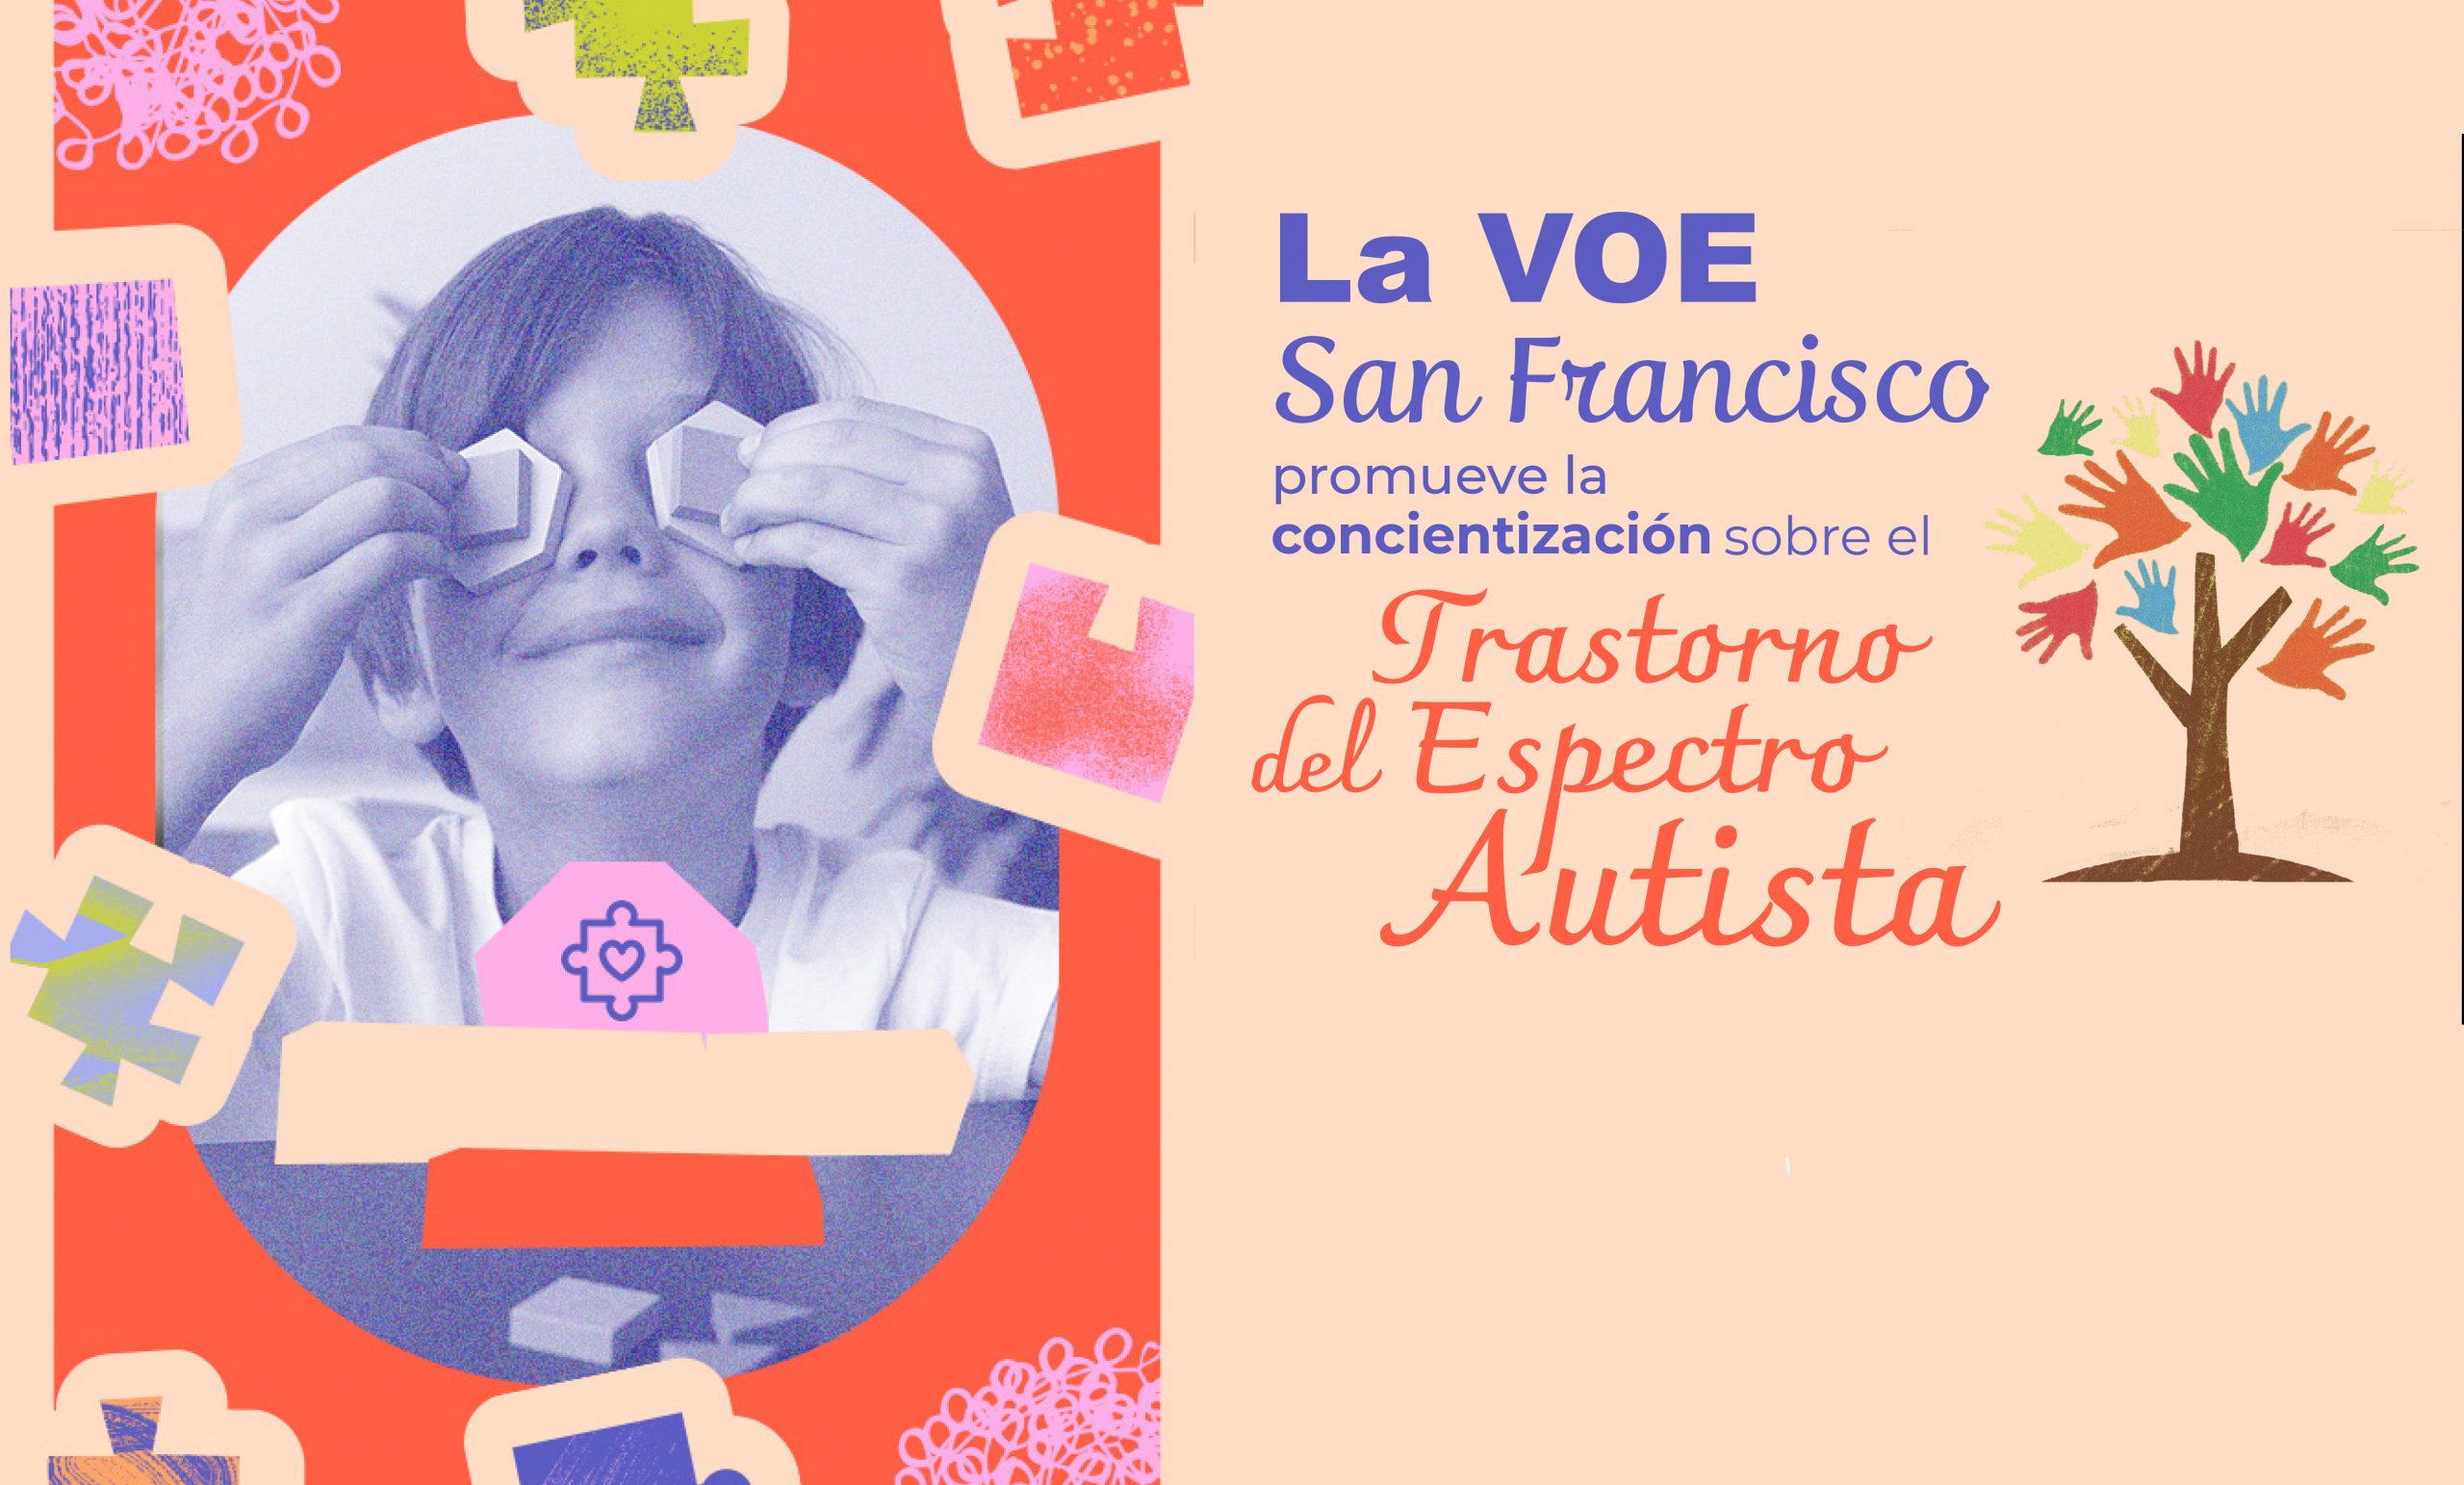 La VOE San Francisco promueve la concientización sobre el Trastorno del Espectro Autista